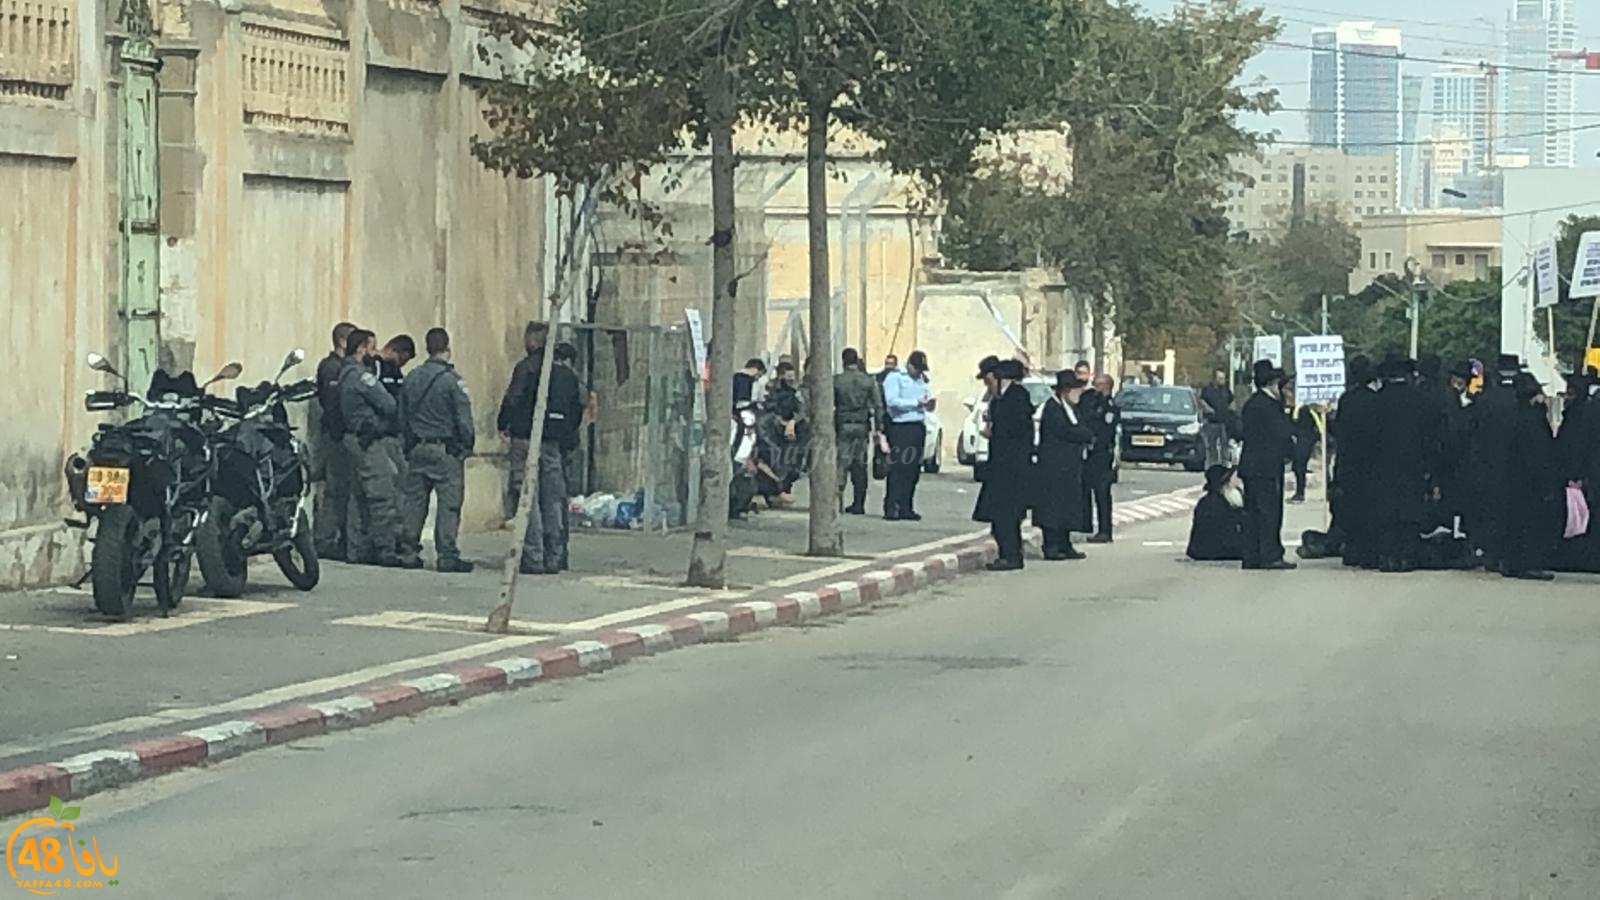  صور: تظاهرة للخارديم في يافا والشرطة تُغلق شارع شيفتي يسرائيل